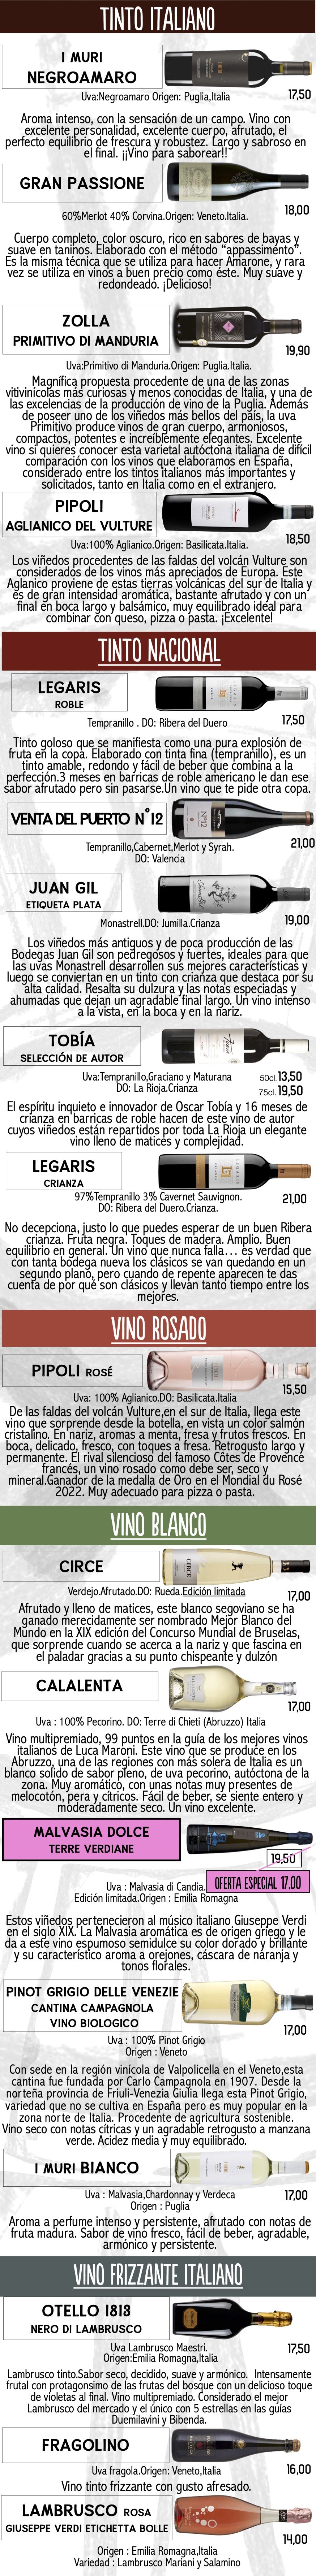 Carta vinos web 04-2024 con Legaris y Malvasia.jpg